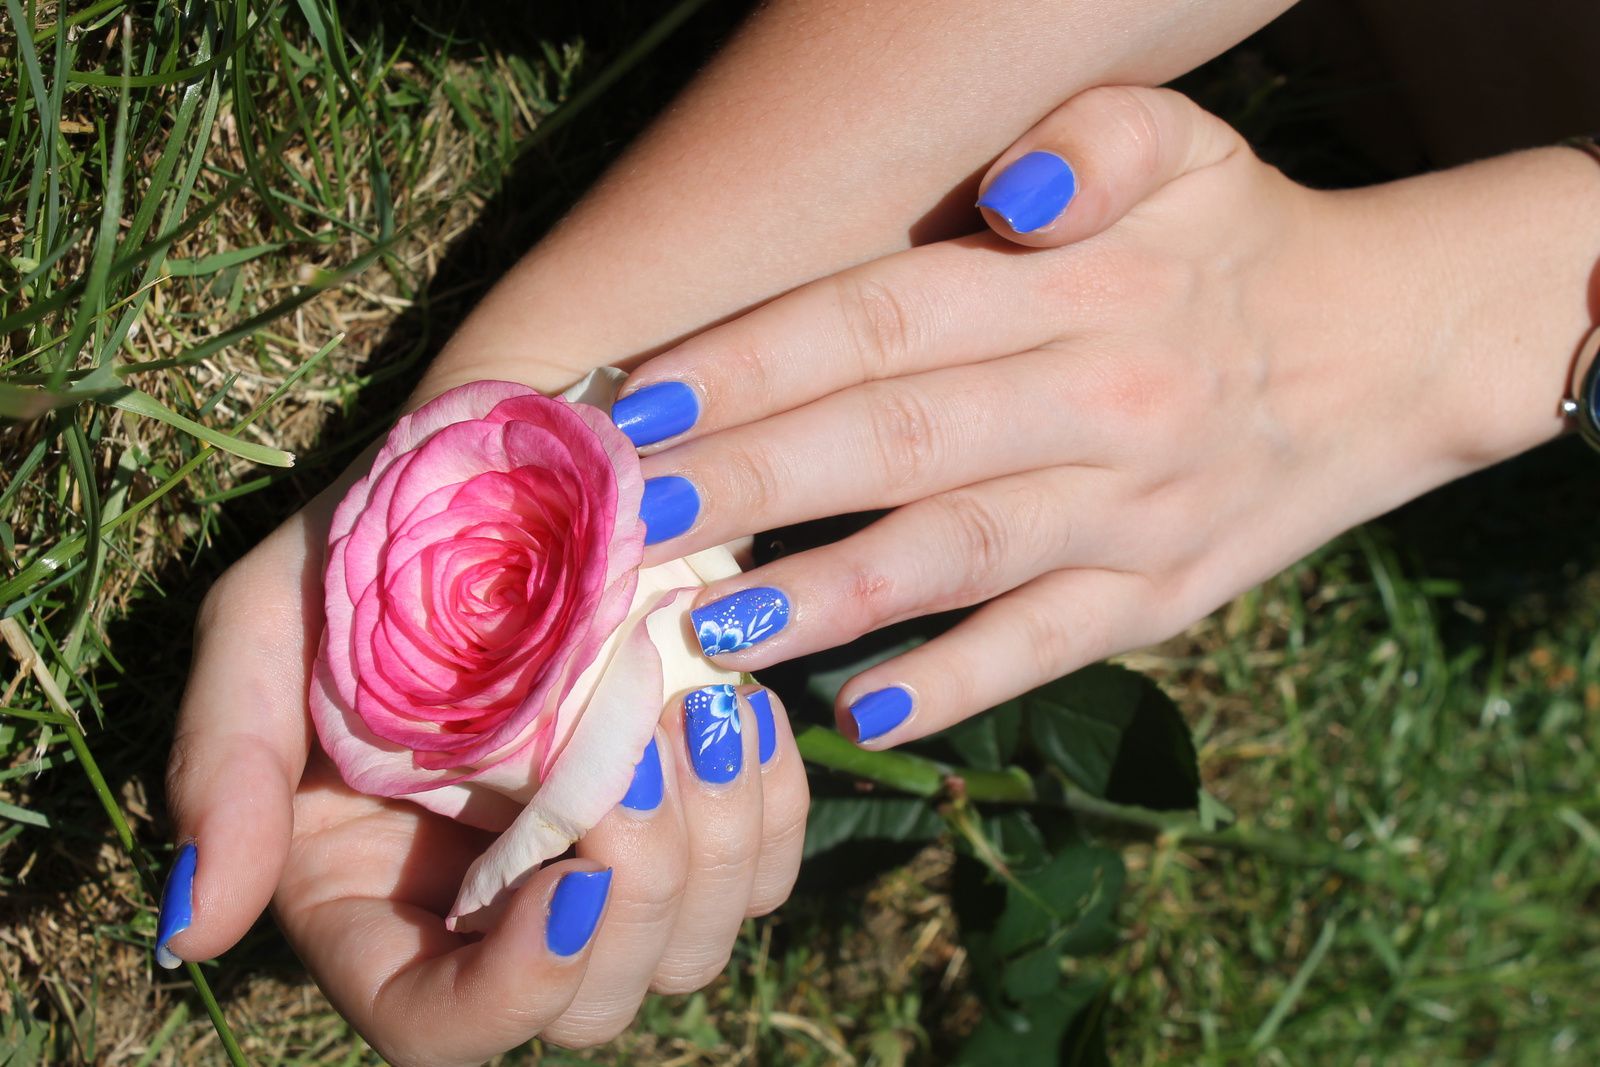 *attention, pluie de photo de mon nail art, avec ma jolie rose offerte par mon chéri*